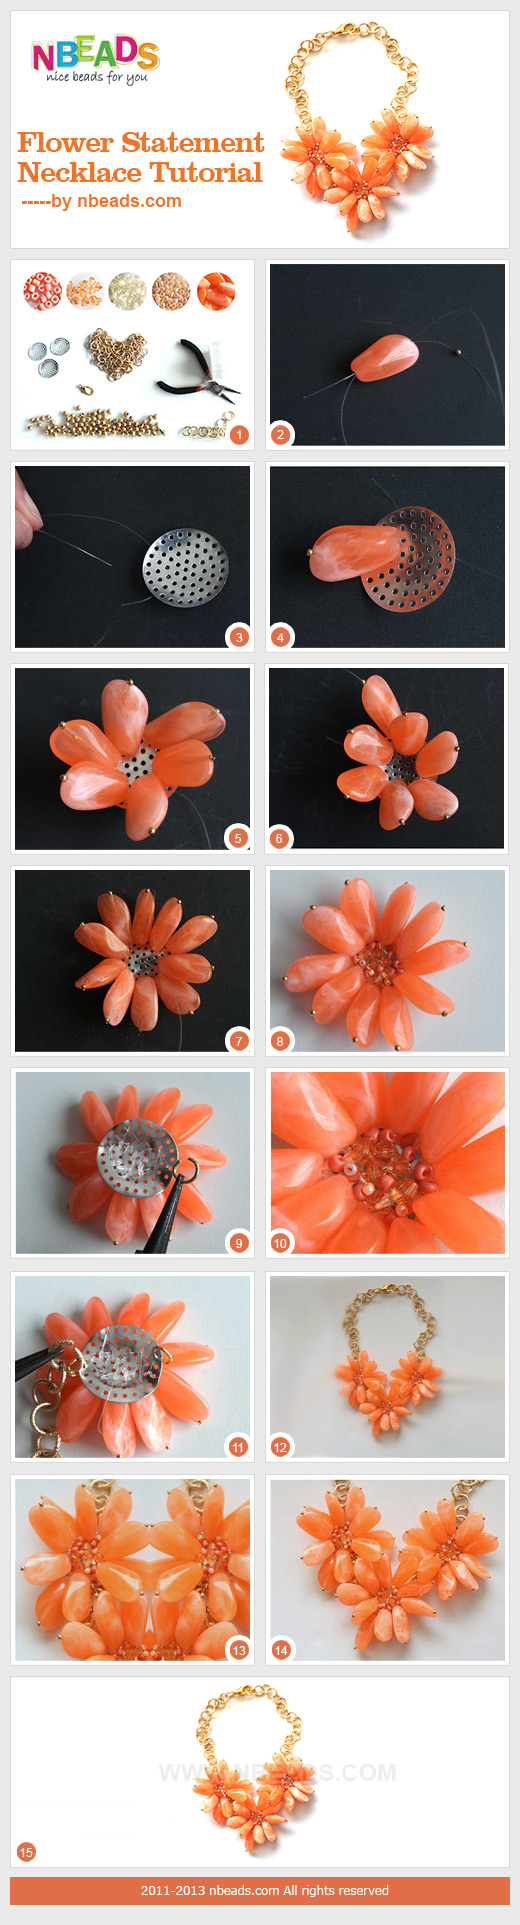 flower statement necklace tutorial